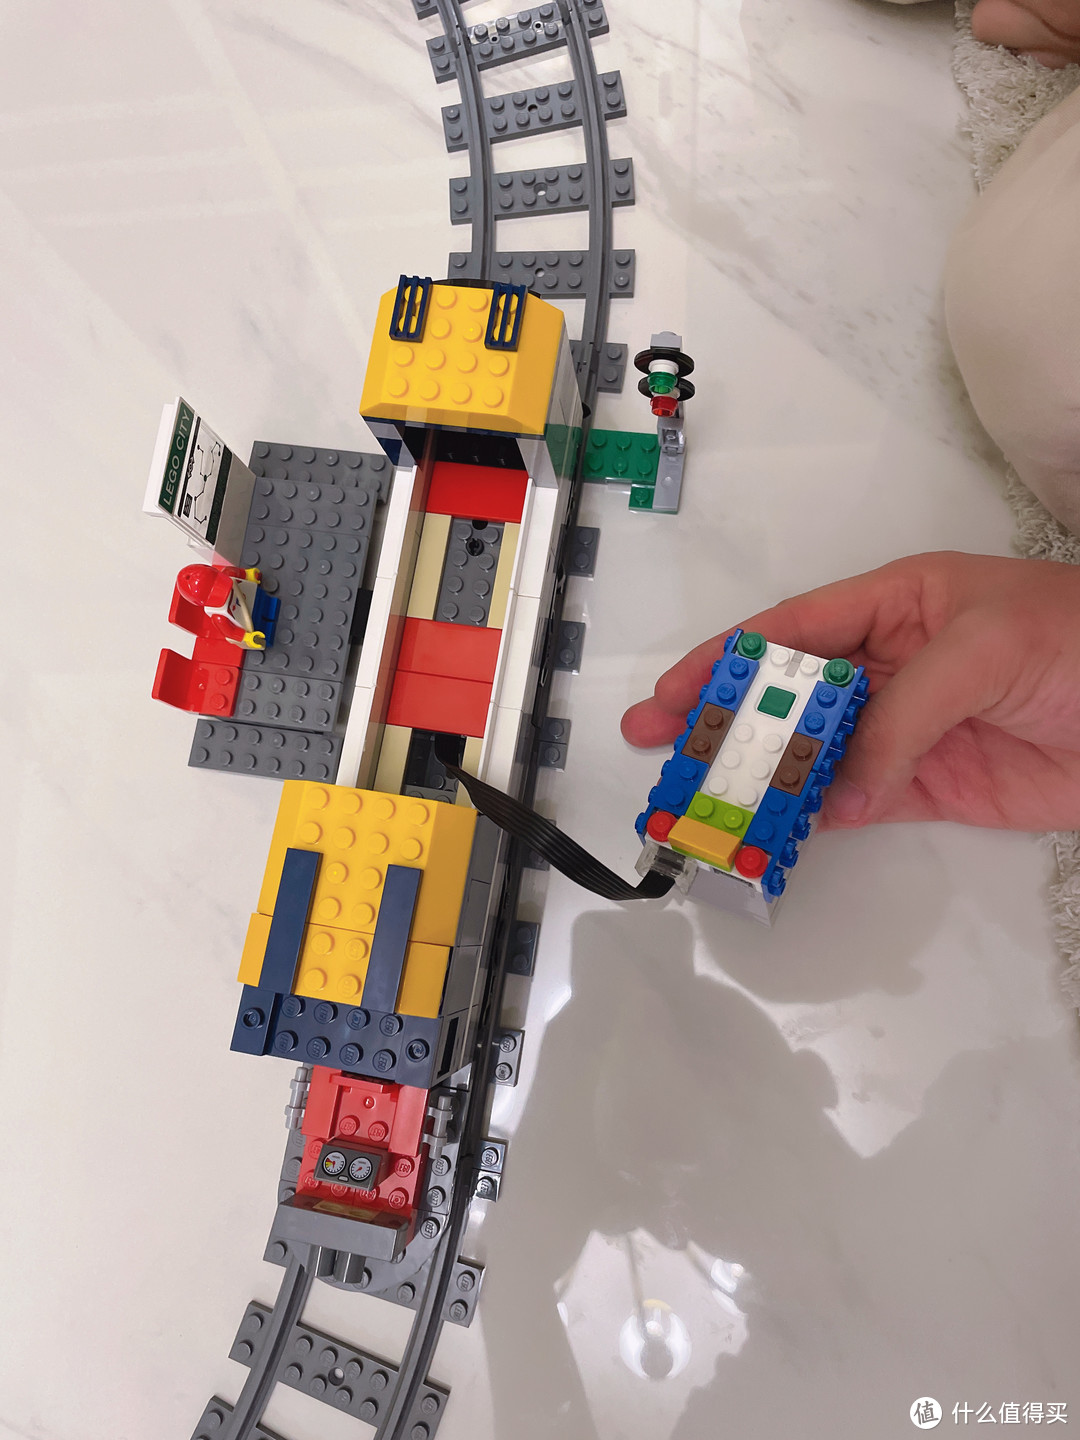 机车迷宝宝5岁生日开箱与搭建——乐高城市系列60197客运火车套装